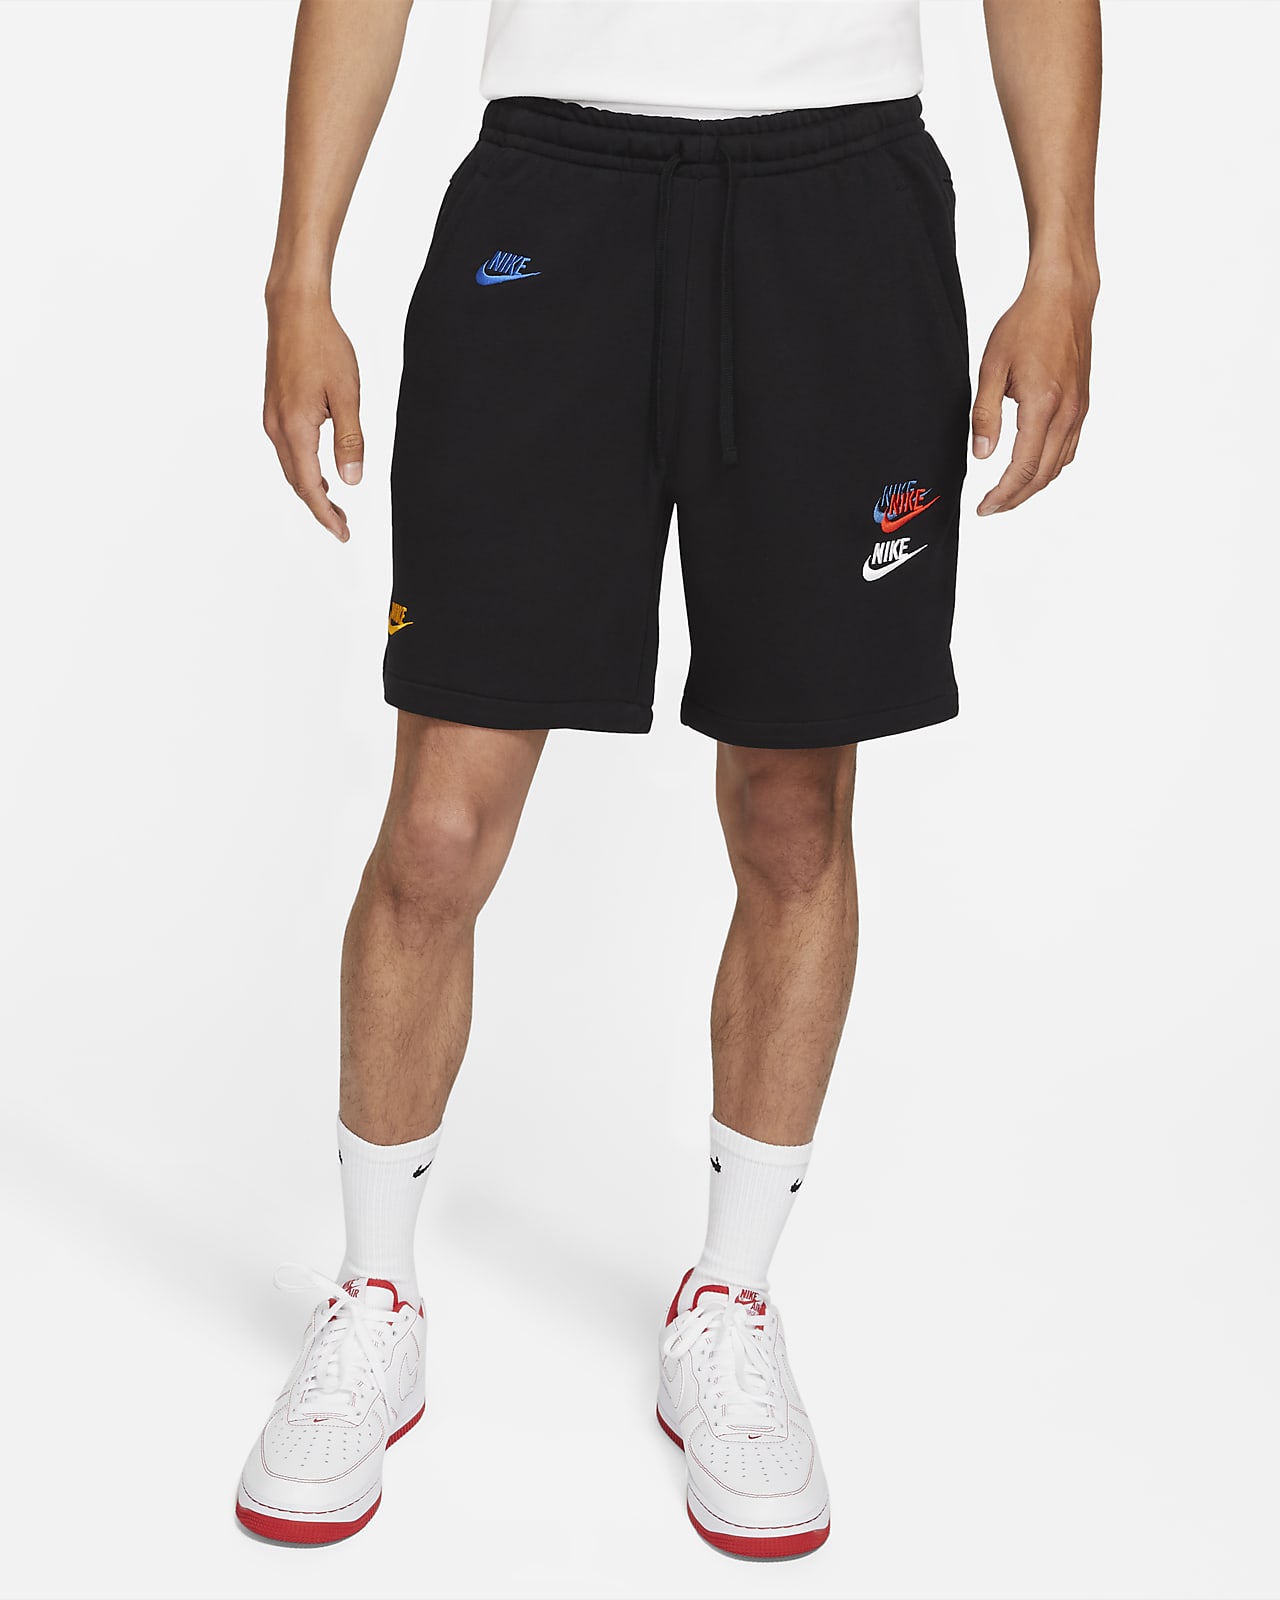 Nike Sportswear Essentials+ 男款法國毛圈布短褲